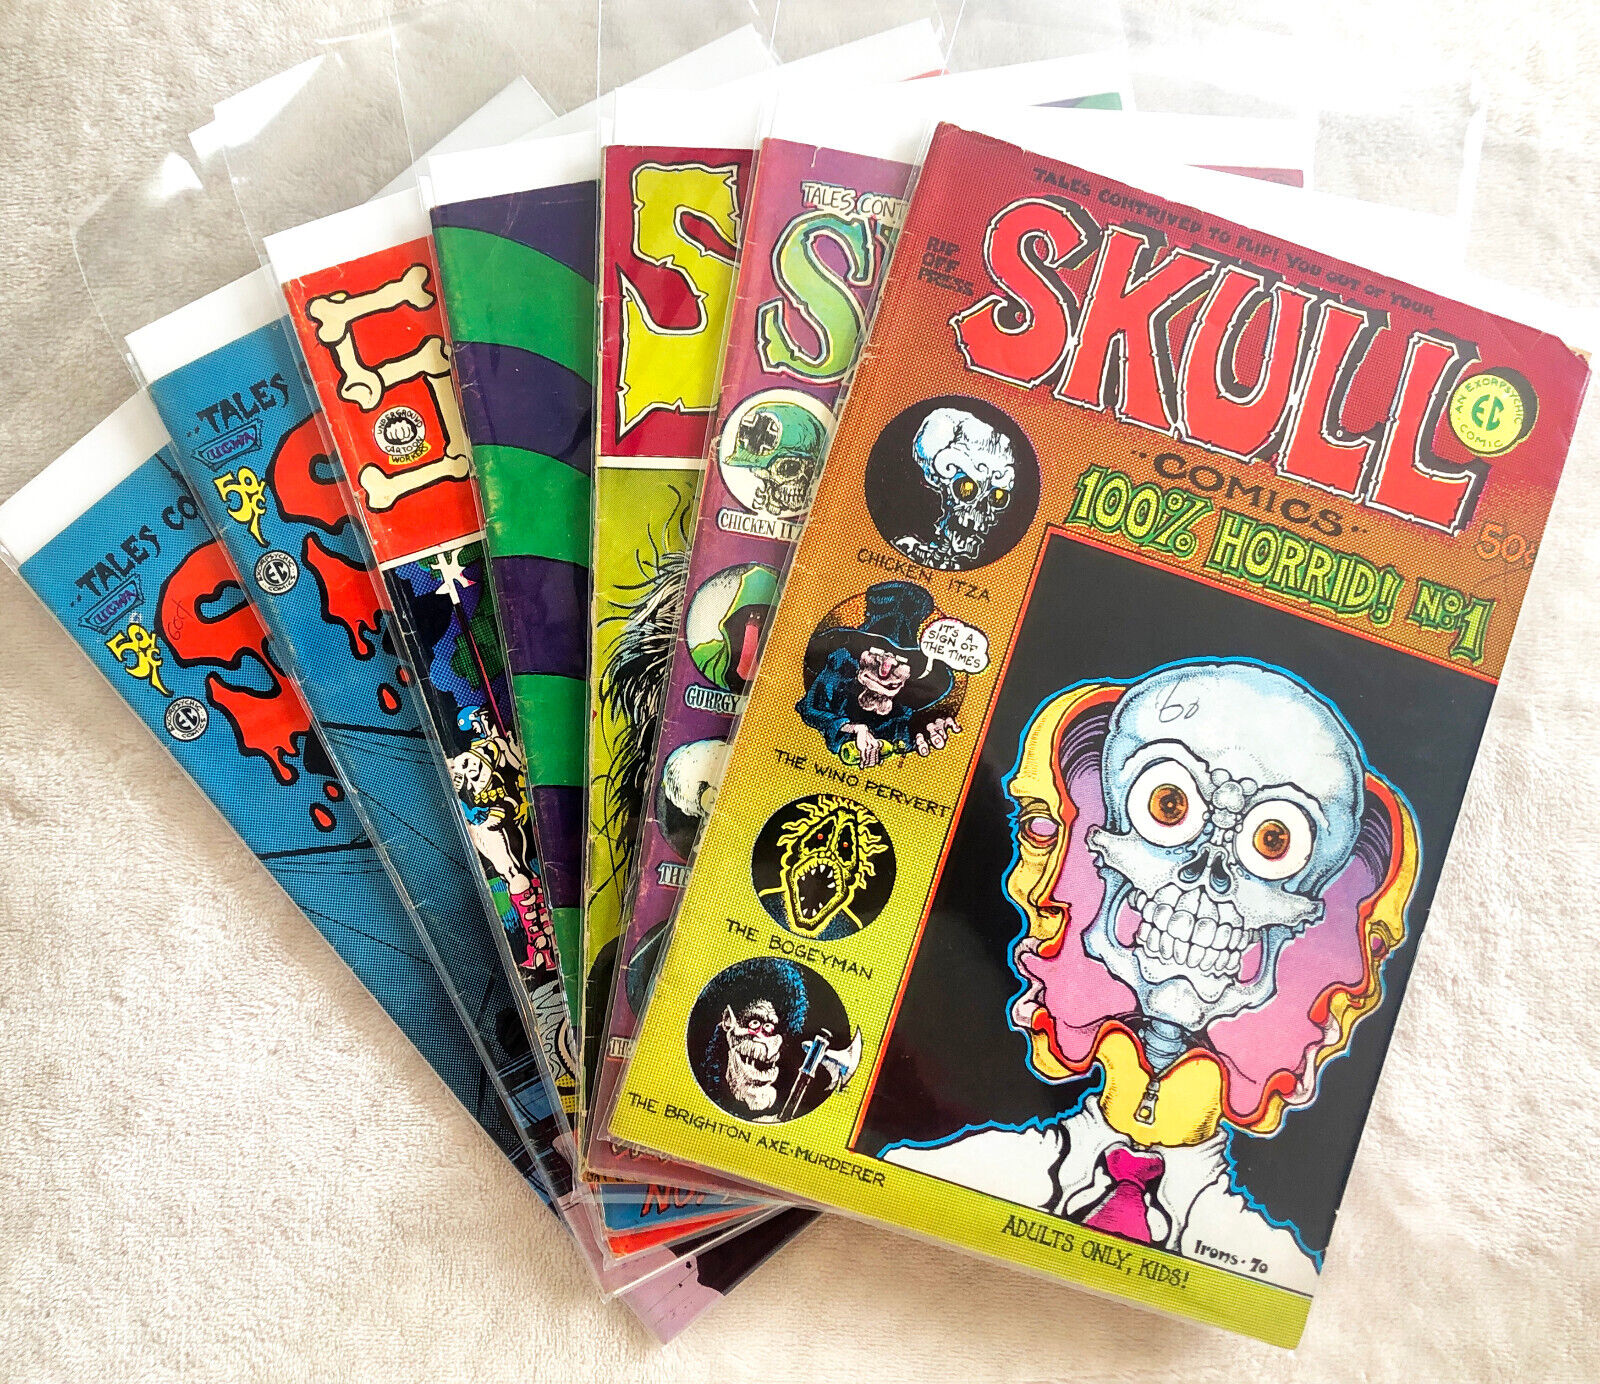 Skull #1 #2 #3 #4 #5 #6 (2 copies) Robert Crumb Five Issue Discount Run